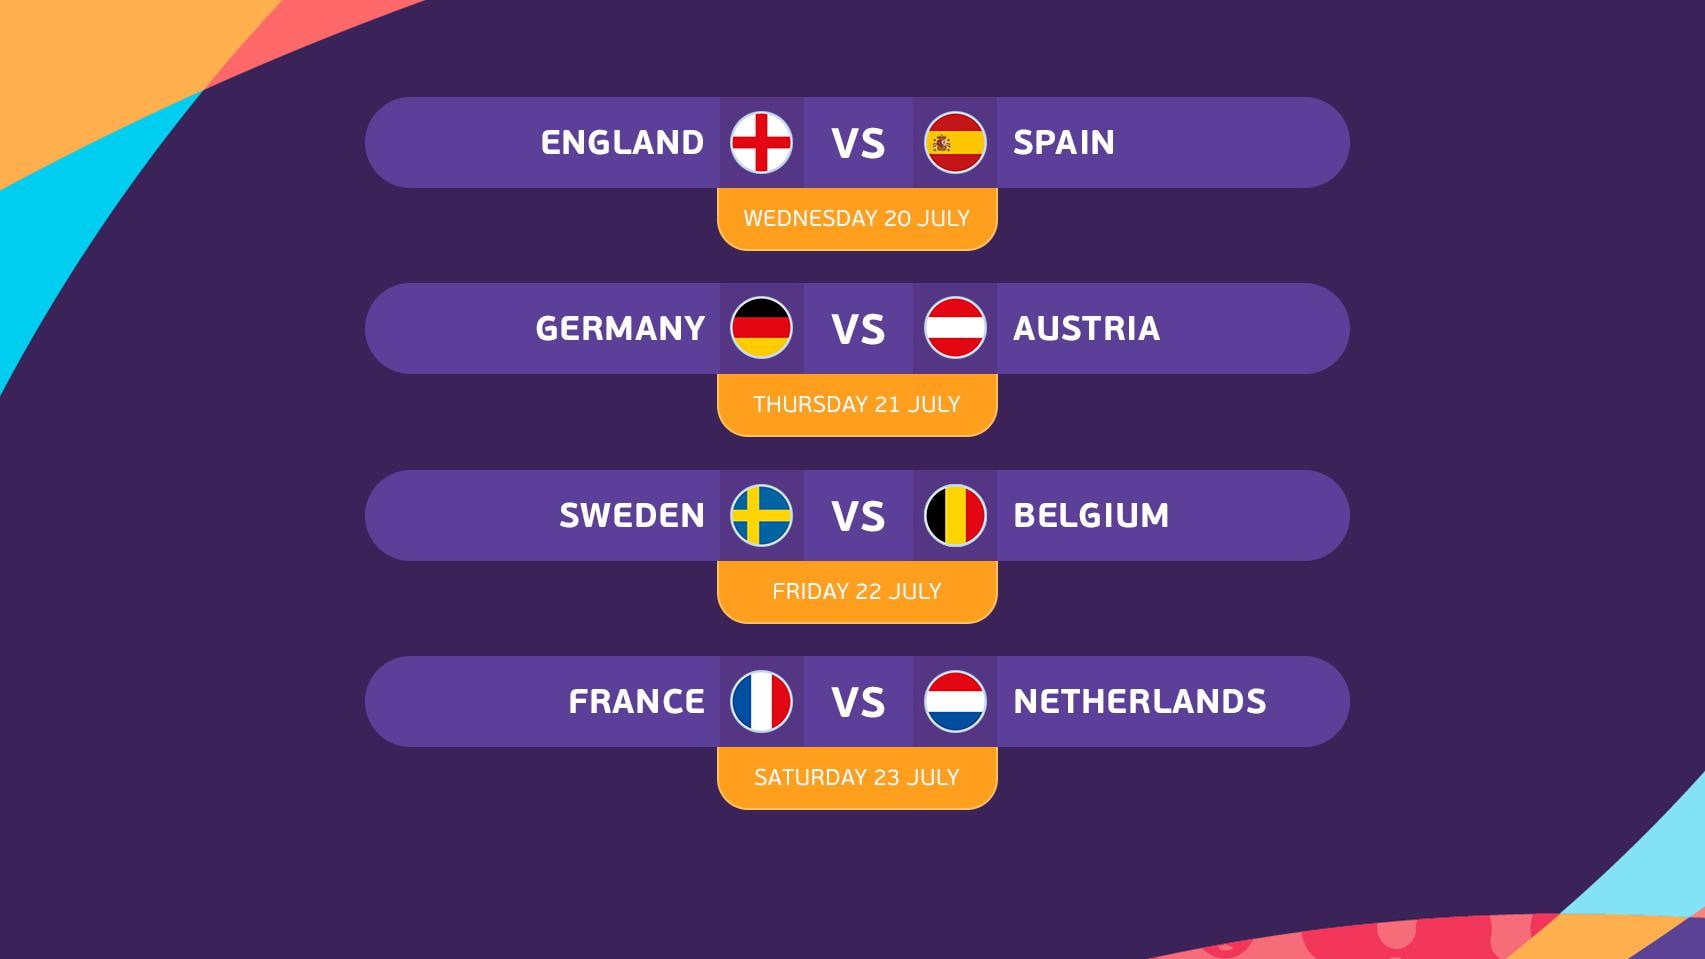 Cuartos de final de la Eurocopa femenina confirmados: Inglaterra vs España, Alemania vs Austria, Suecia vs Bélgica, Francia vs Holanda |  Eurocopa Femenina de la UEFA